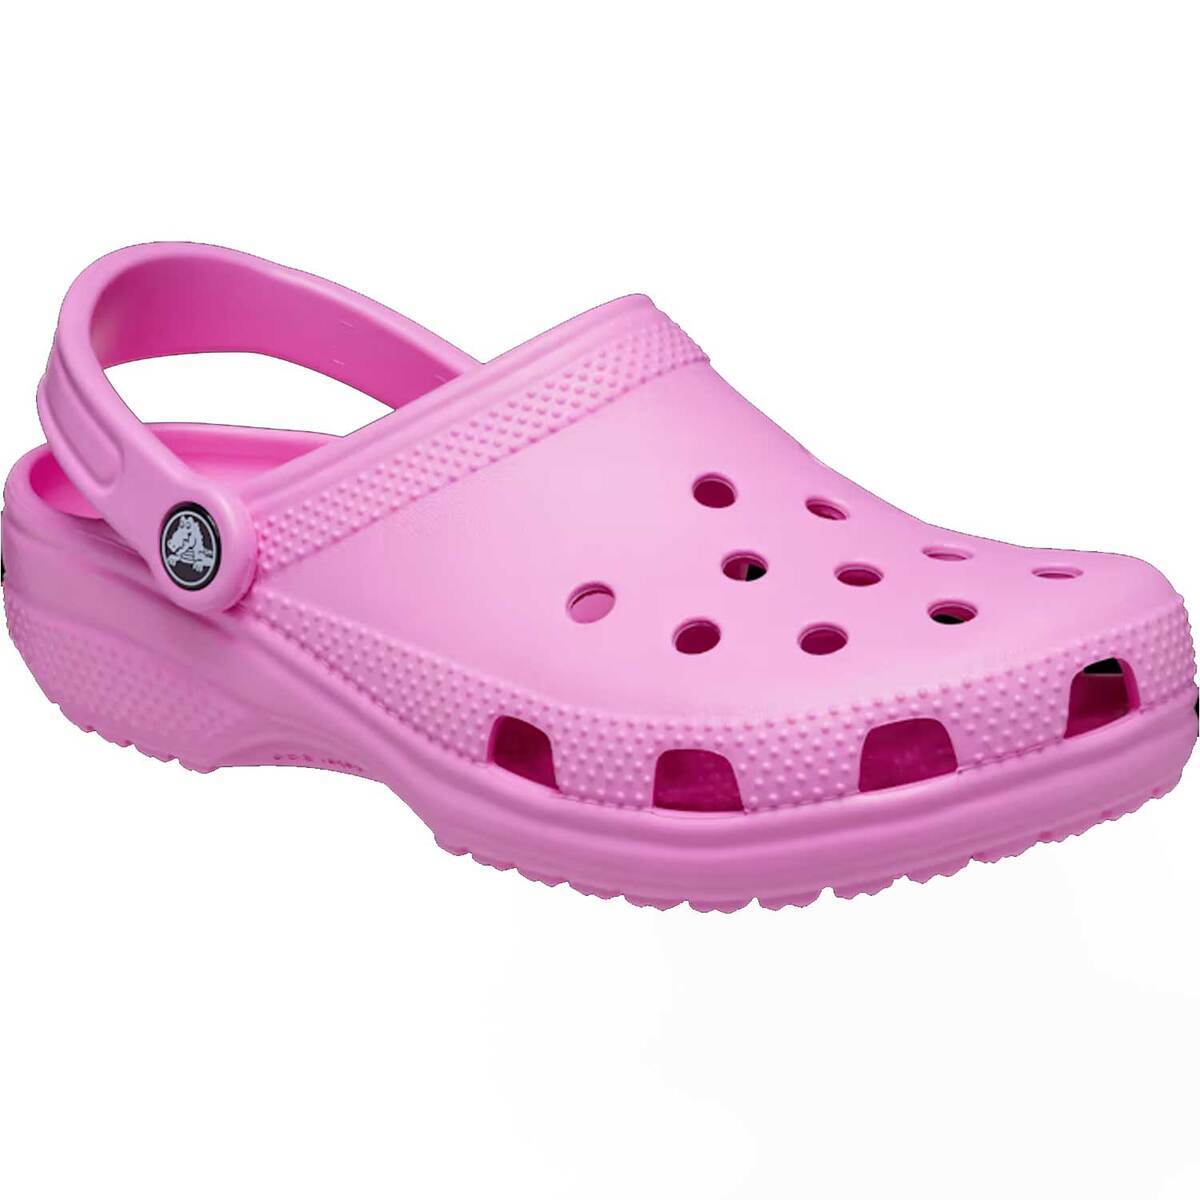 Crocs Classic Clogs - Taffy Pink - Size M6/W8 - Taffy Pink M6/W8 ...